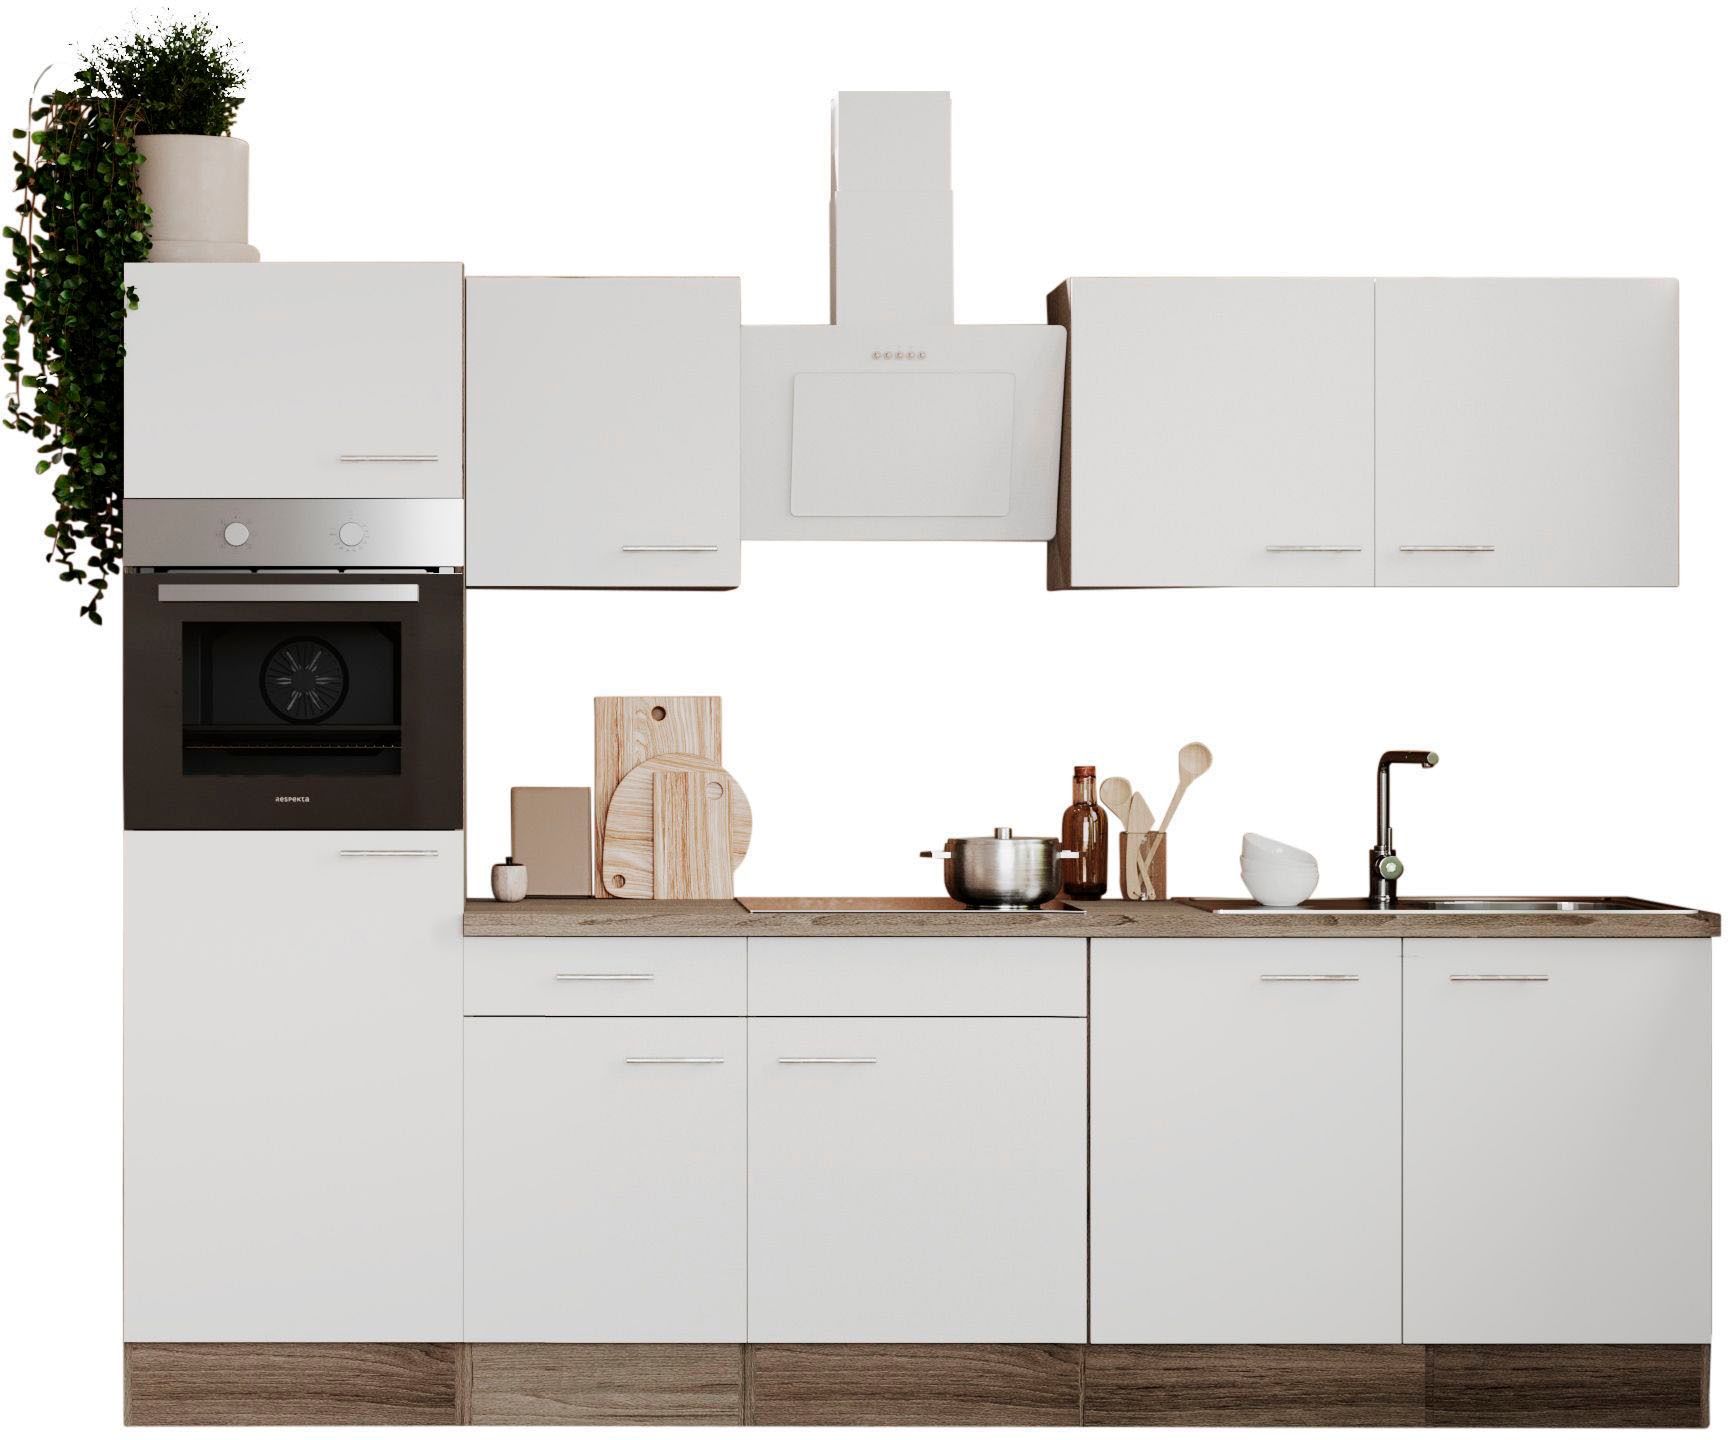 RESPEKTA Küche »Oliver«, Breite 270 cm, wechselseitig aufbaubar kaufen bequem